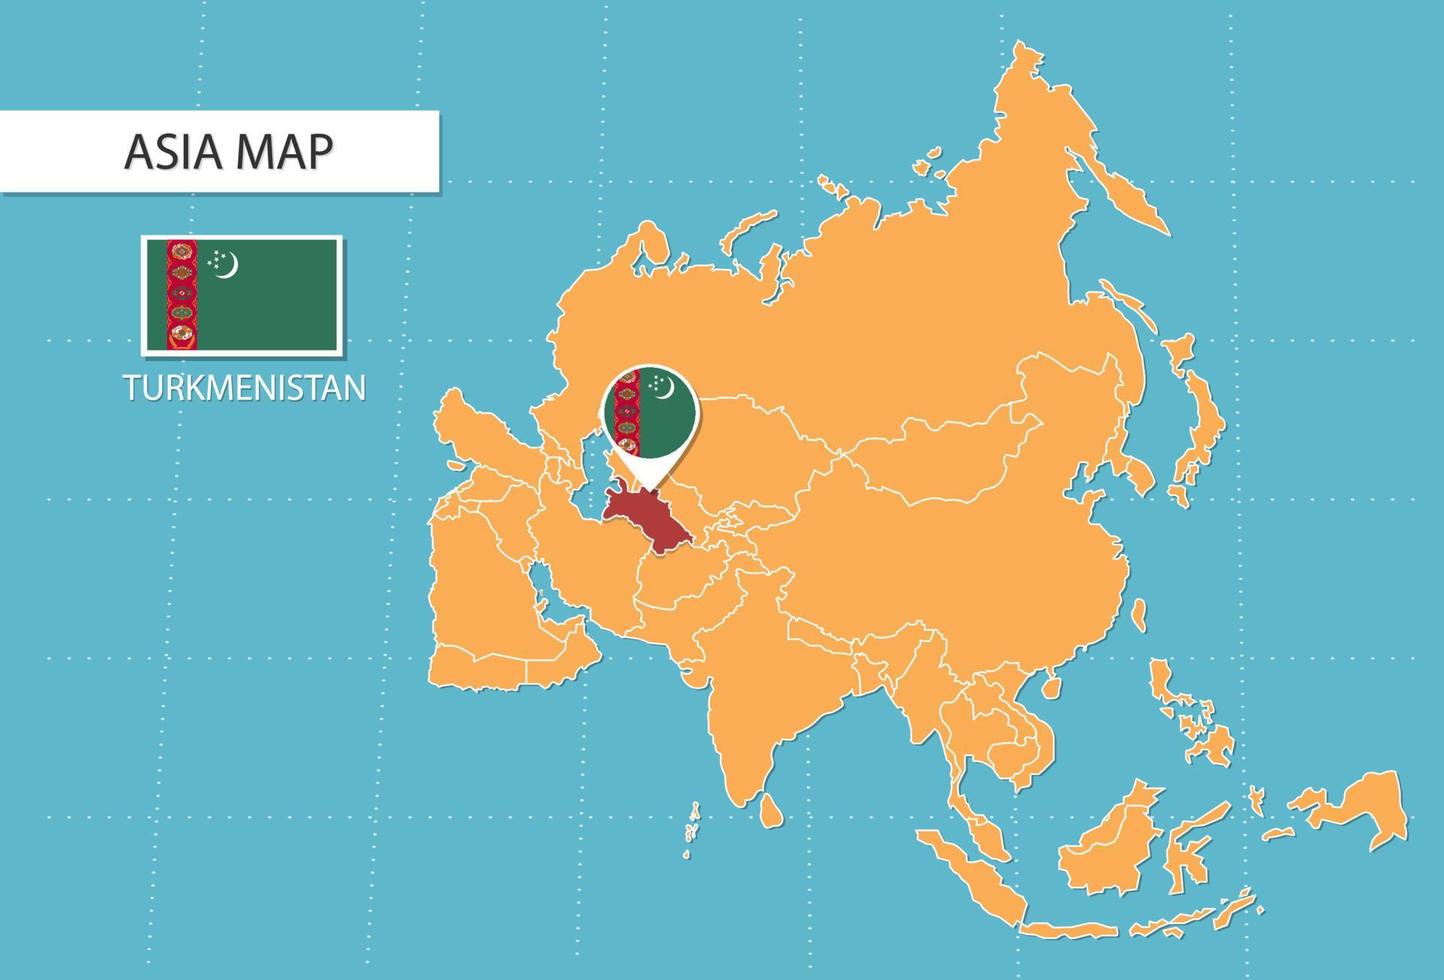 turkmenistan Karta i Asien, ikoner som visar turkmenistan plats och flaggor. vektor